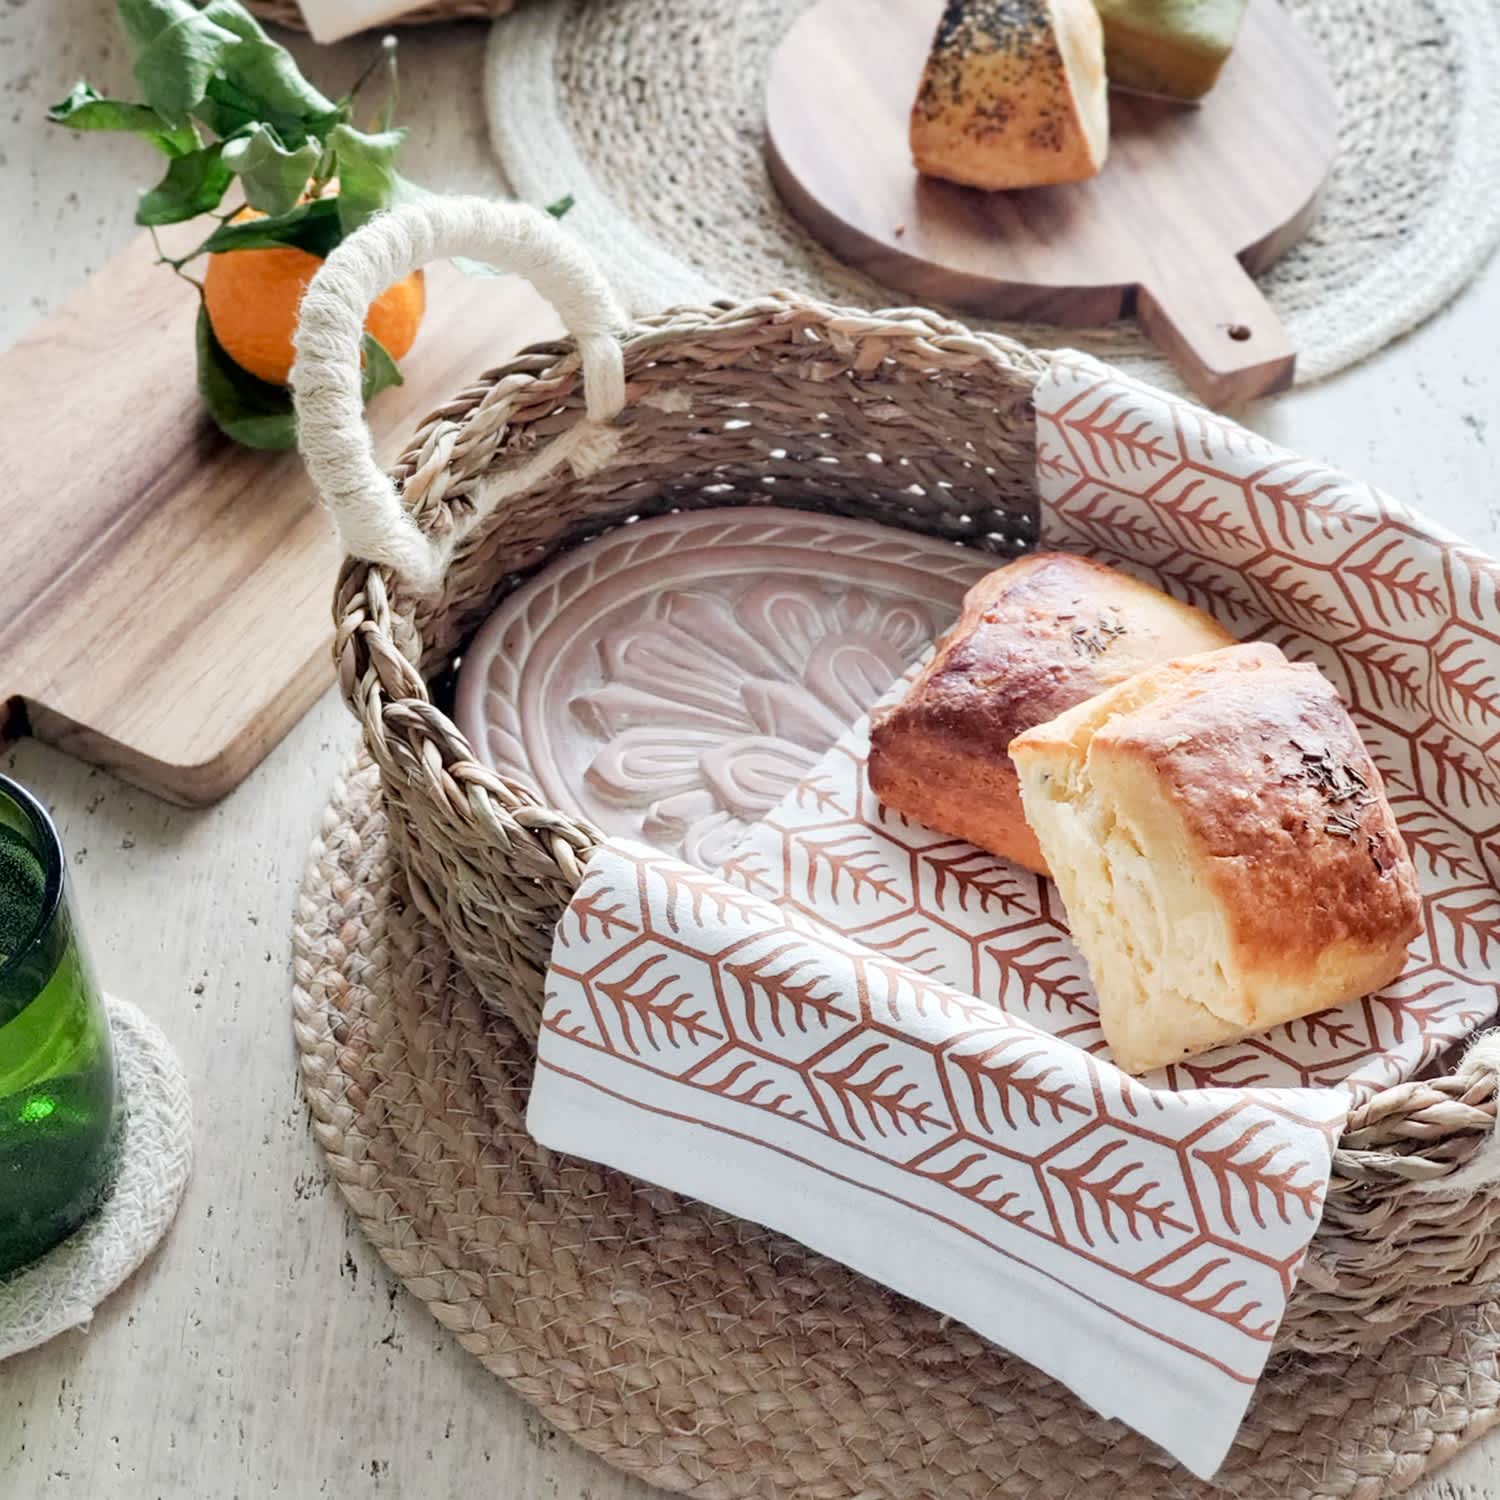 Korissa Round Bread Warmer & Basket - Elmendorf Baking Supplies